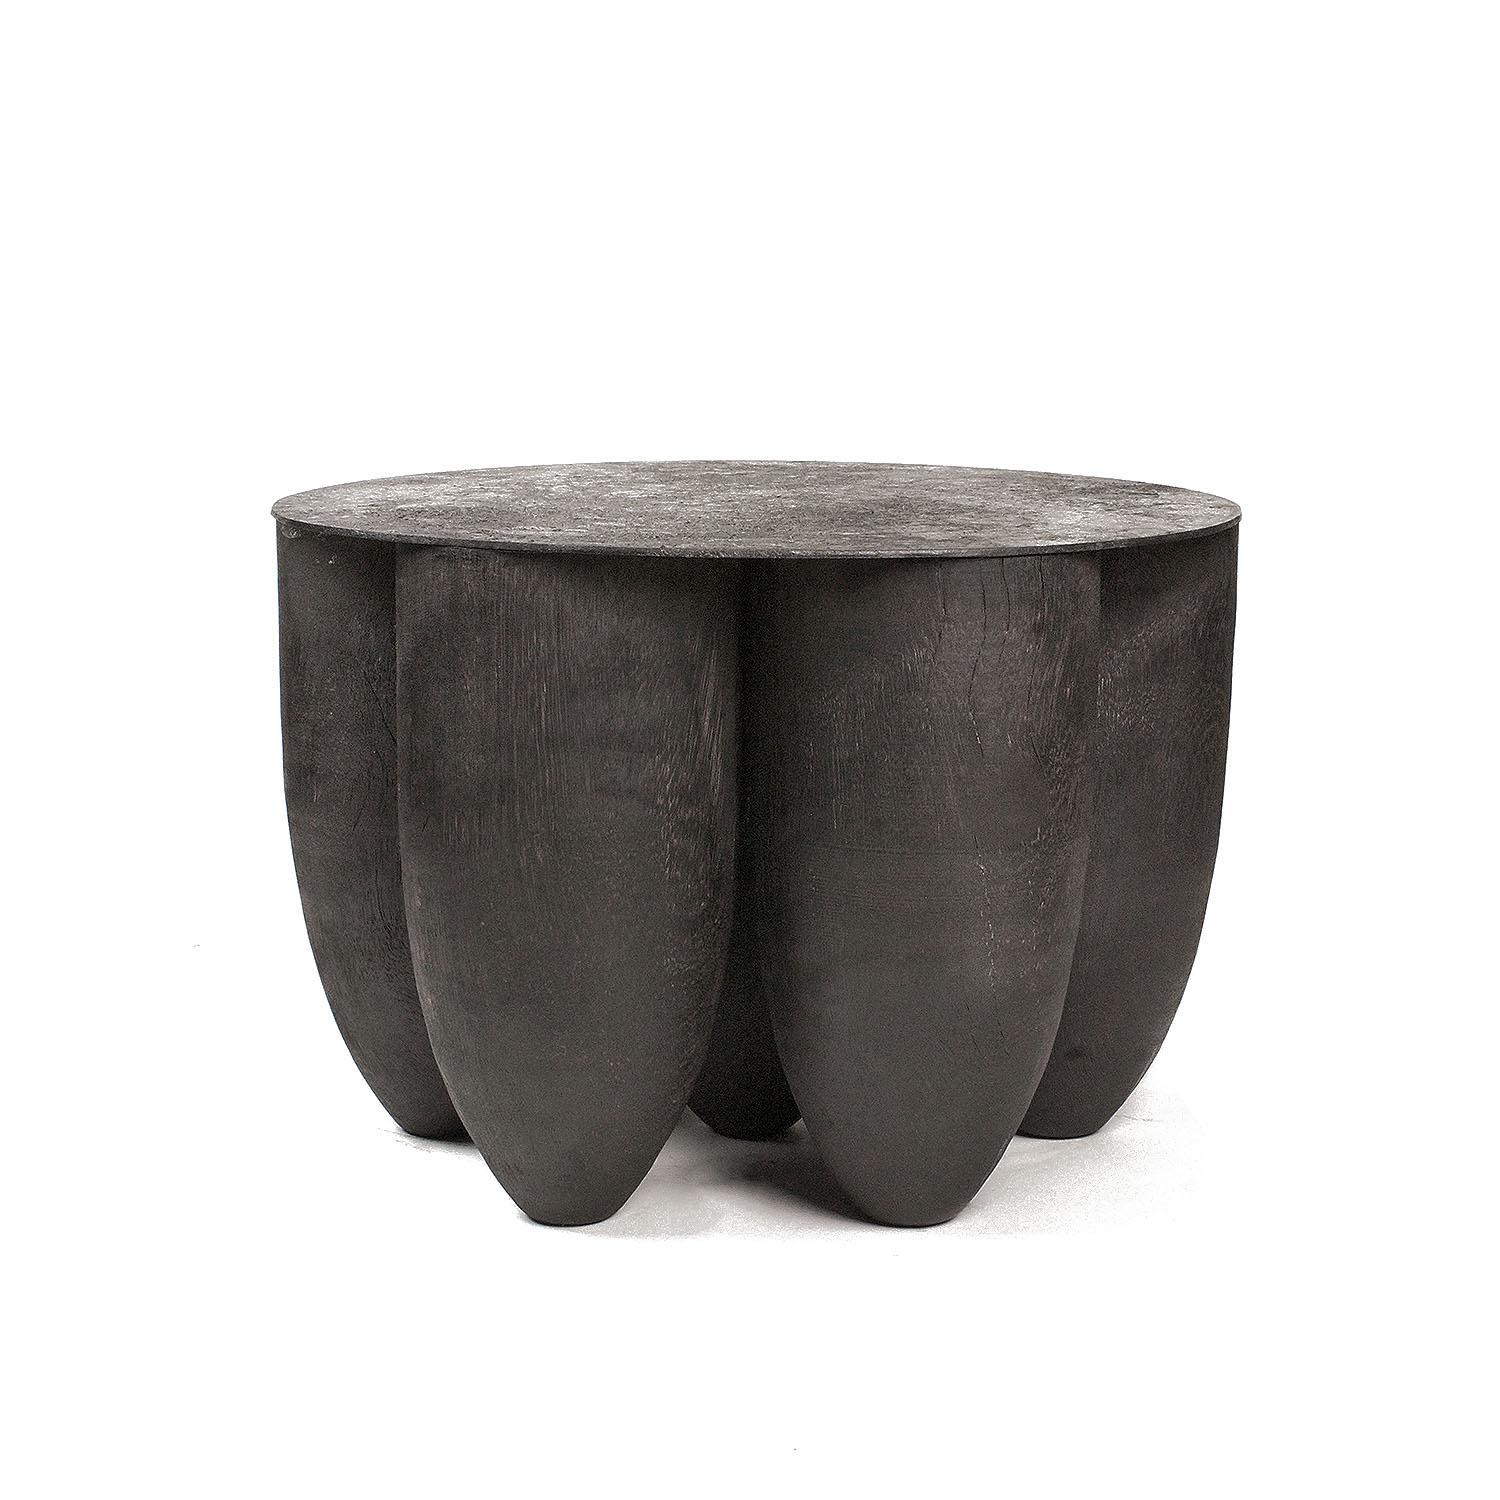 Table basse noire contemporaine en bois d'iroko, Senufo par Arno Declercq

Matériau : bois d'iroko et acier brûlé
Dimensions : 45 cm L x 45 cm L x 30 cm H / 17,7